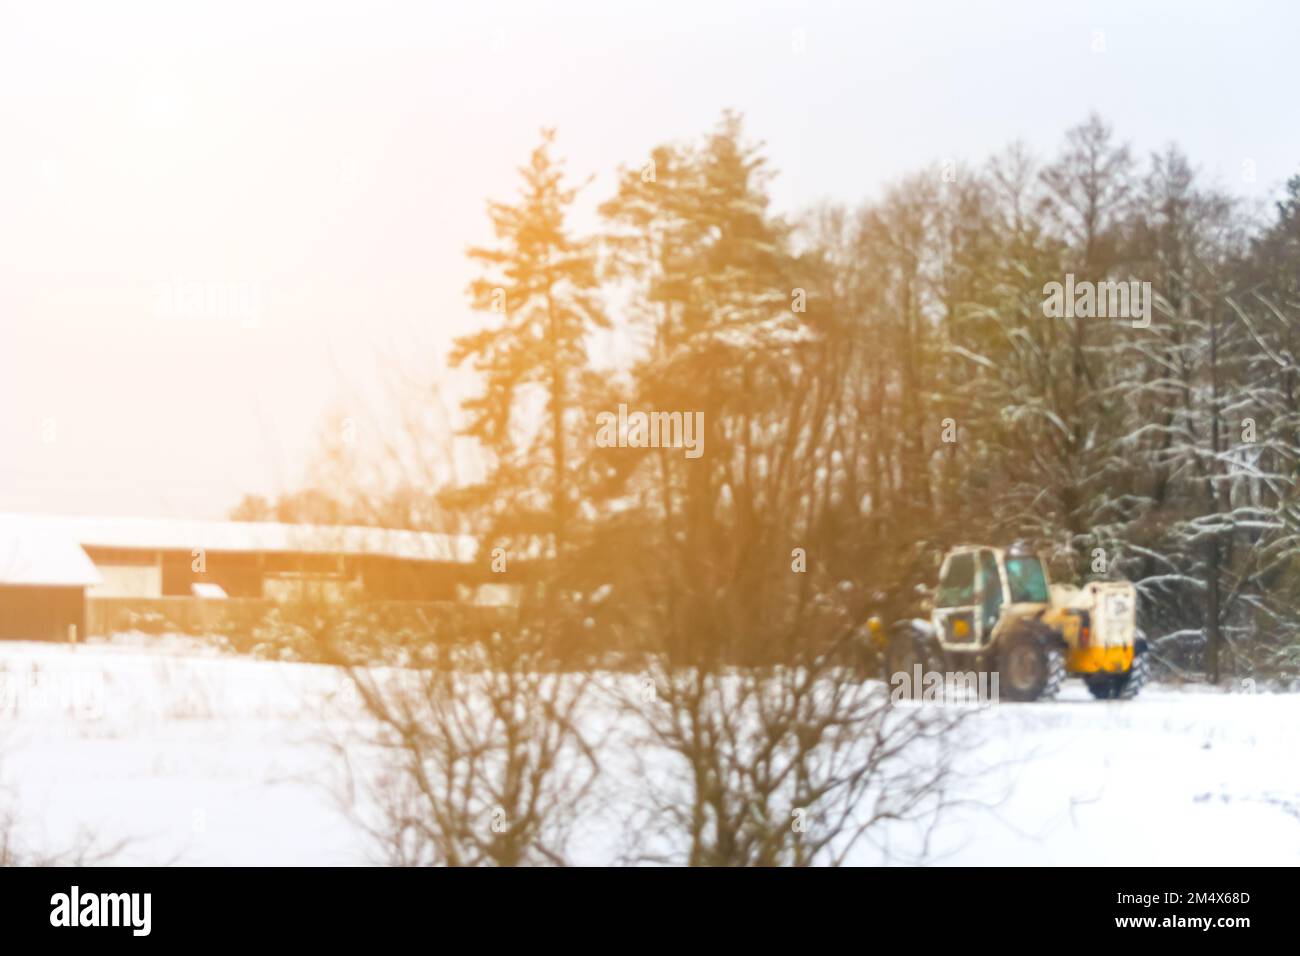 Unschärfe-Traktor sauberer Schnee, sonniges Licht. Traktor reinigt Schnee auf dem Feld. Der große gelbe Traktor räumt Schnee von der Straße auf und lädt ihn in den Lkw. O Stockfoto